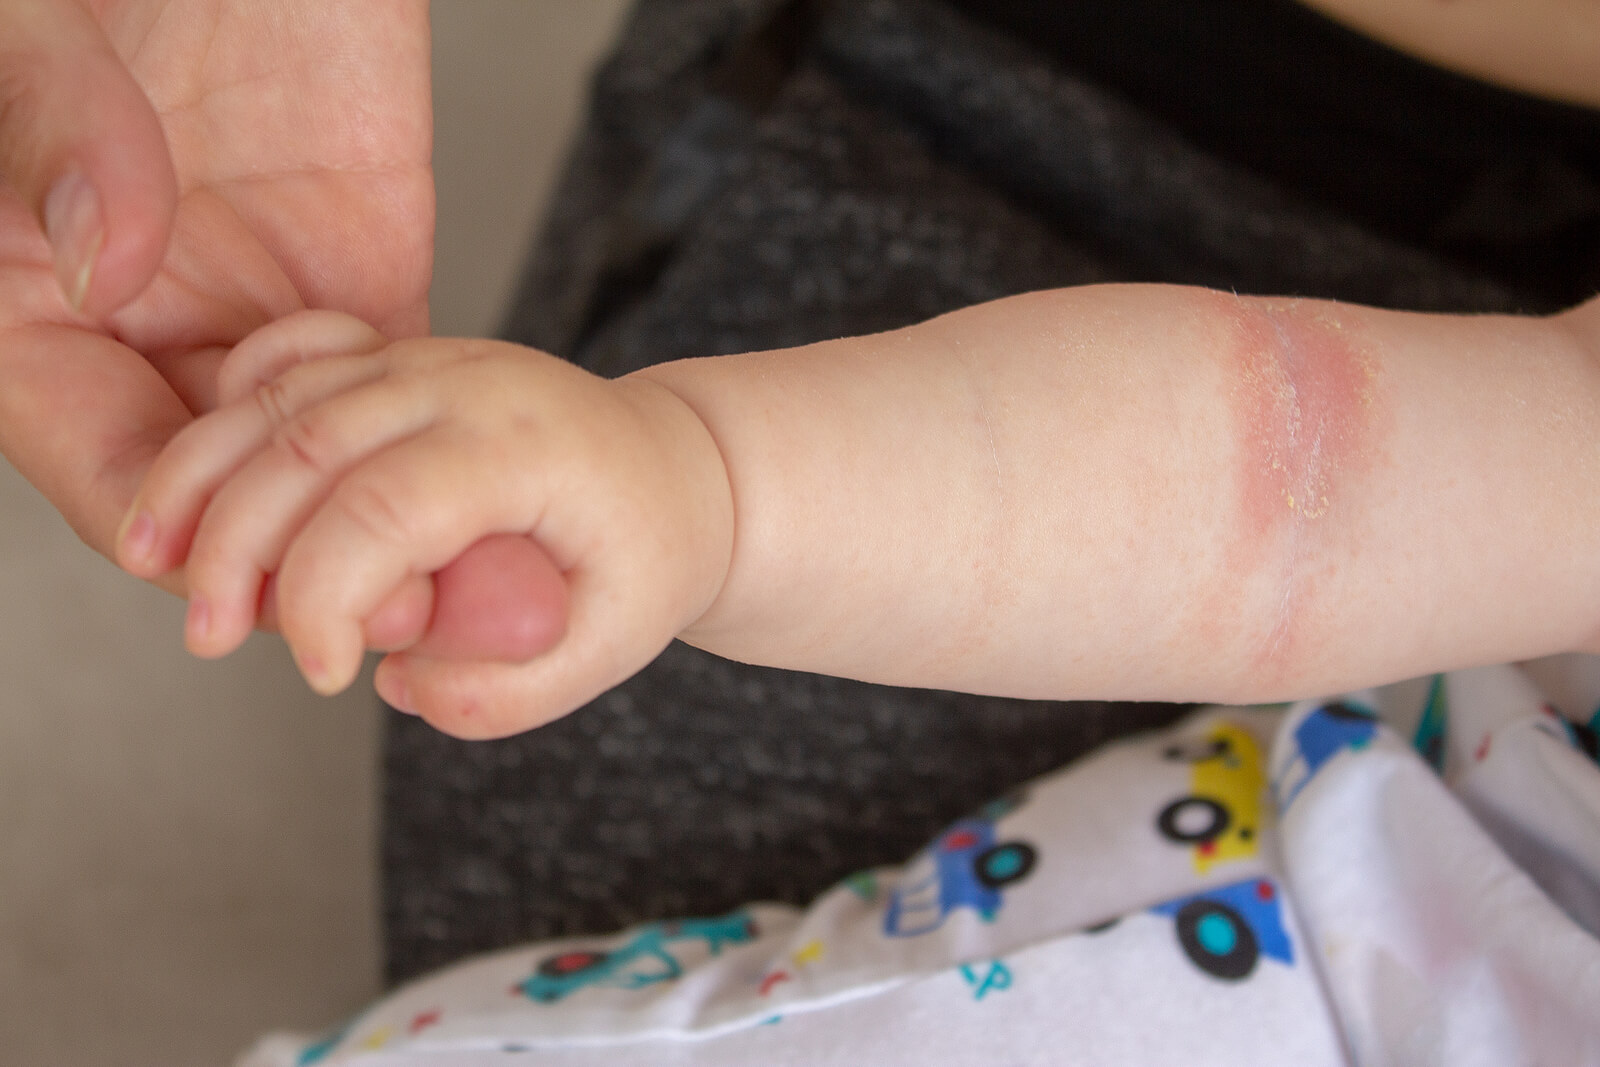 Bambino con eczema al braccio a causa di una delle micosi cutanee.